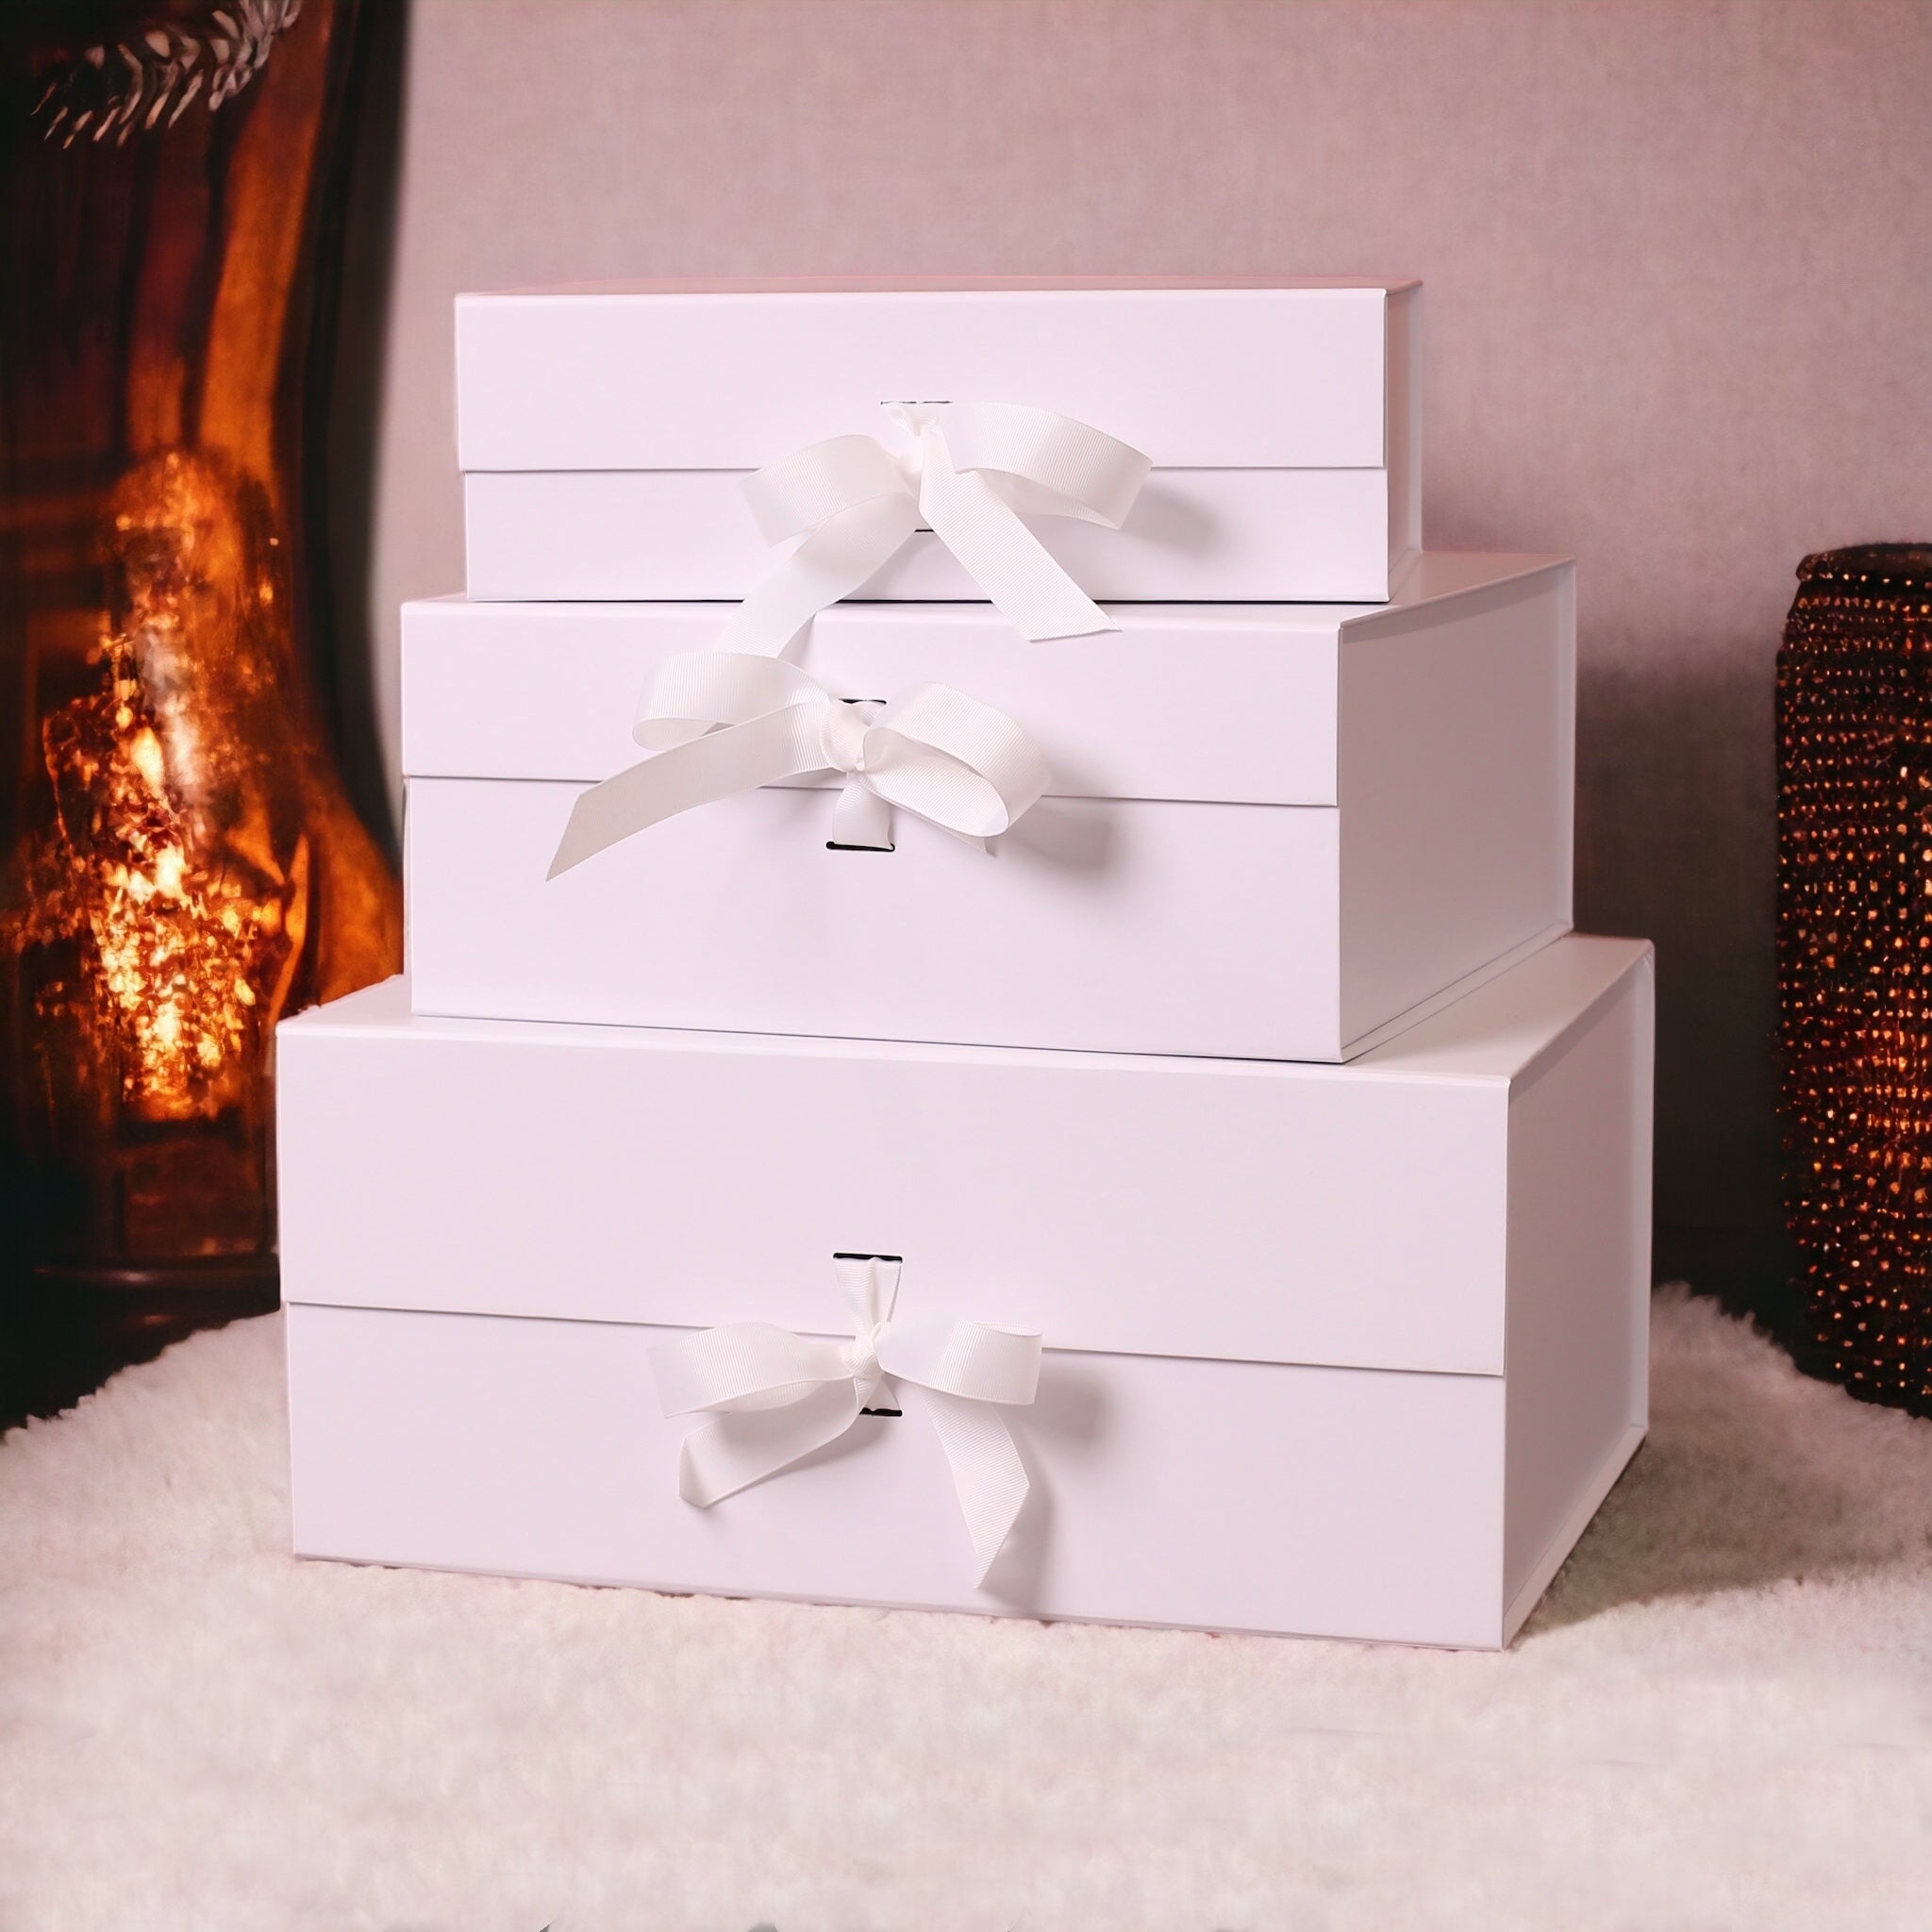 Red Wine Gift Box: Australian Shiraz and Chocs!